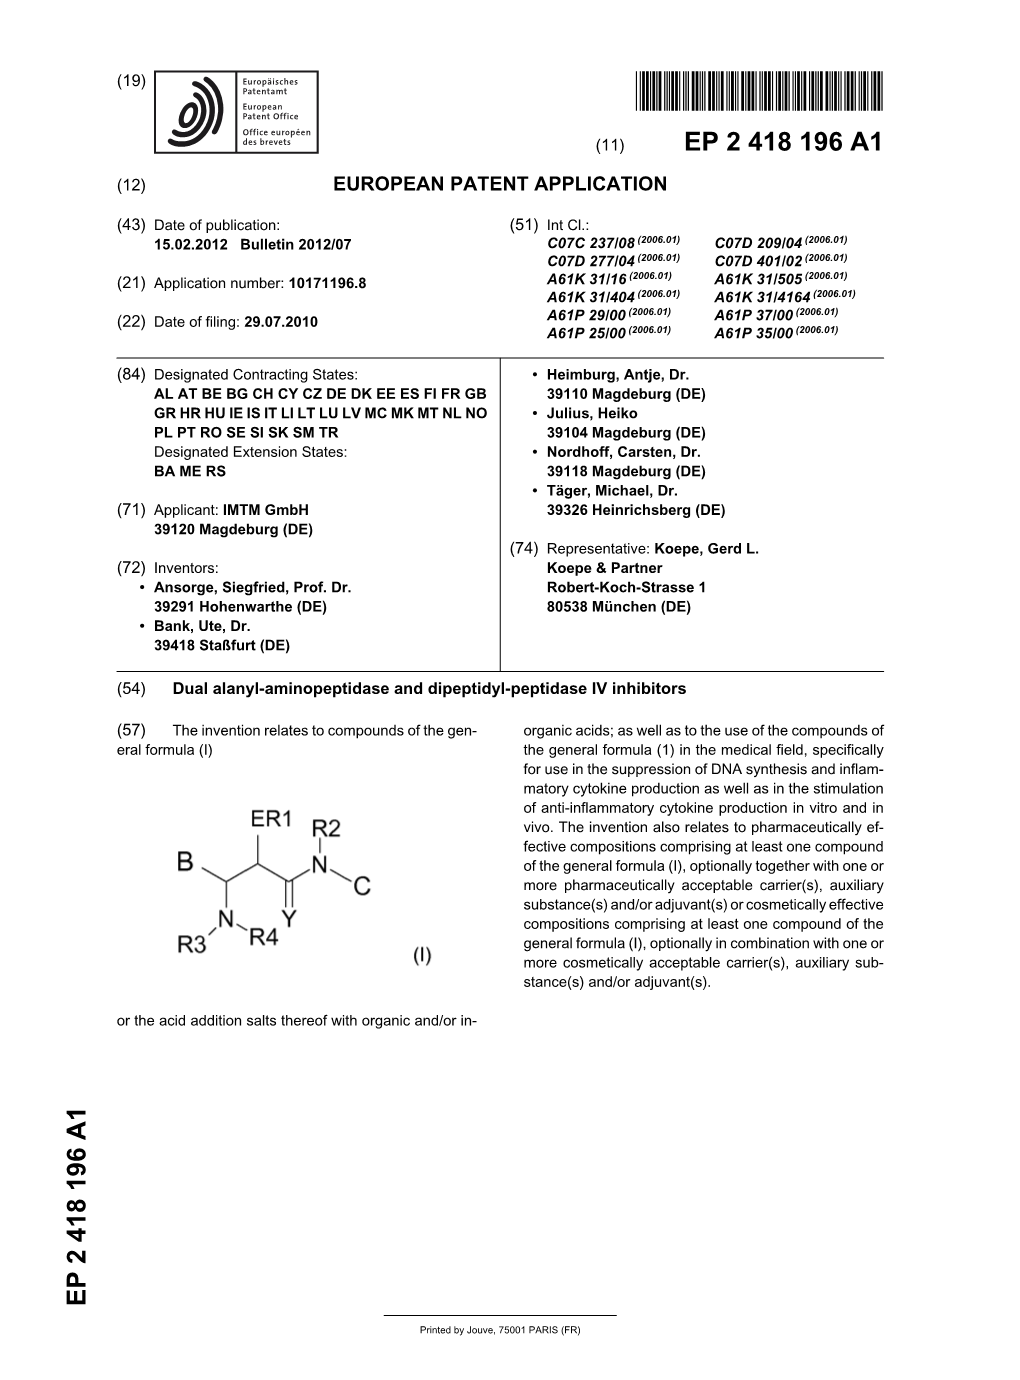 Dual Alanyl-Aminopeptidase and Dipeptidyl-Peptidase IV Inhibitors